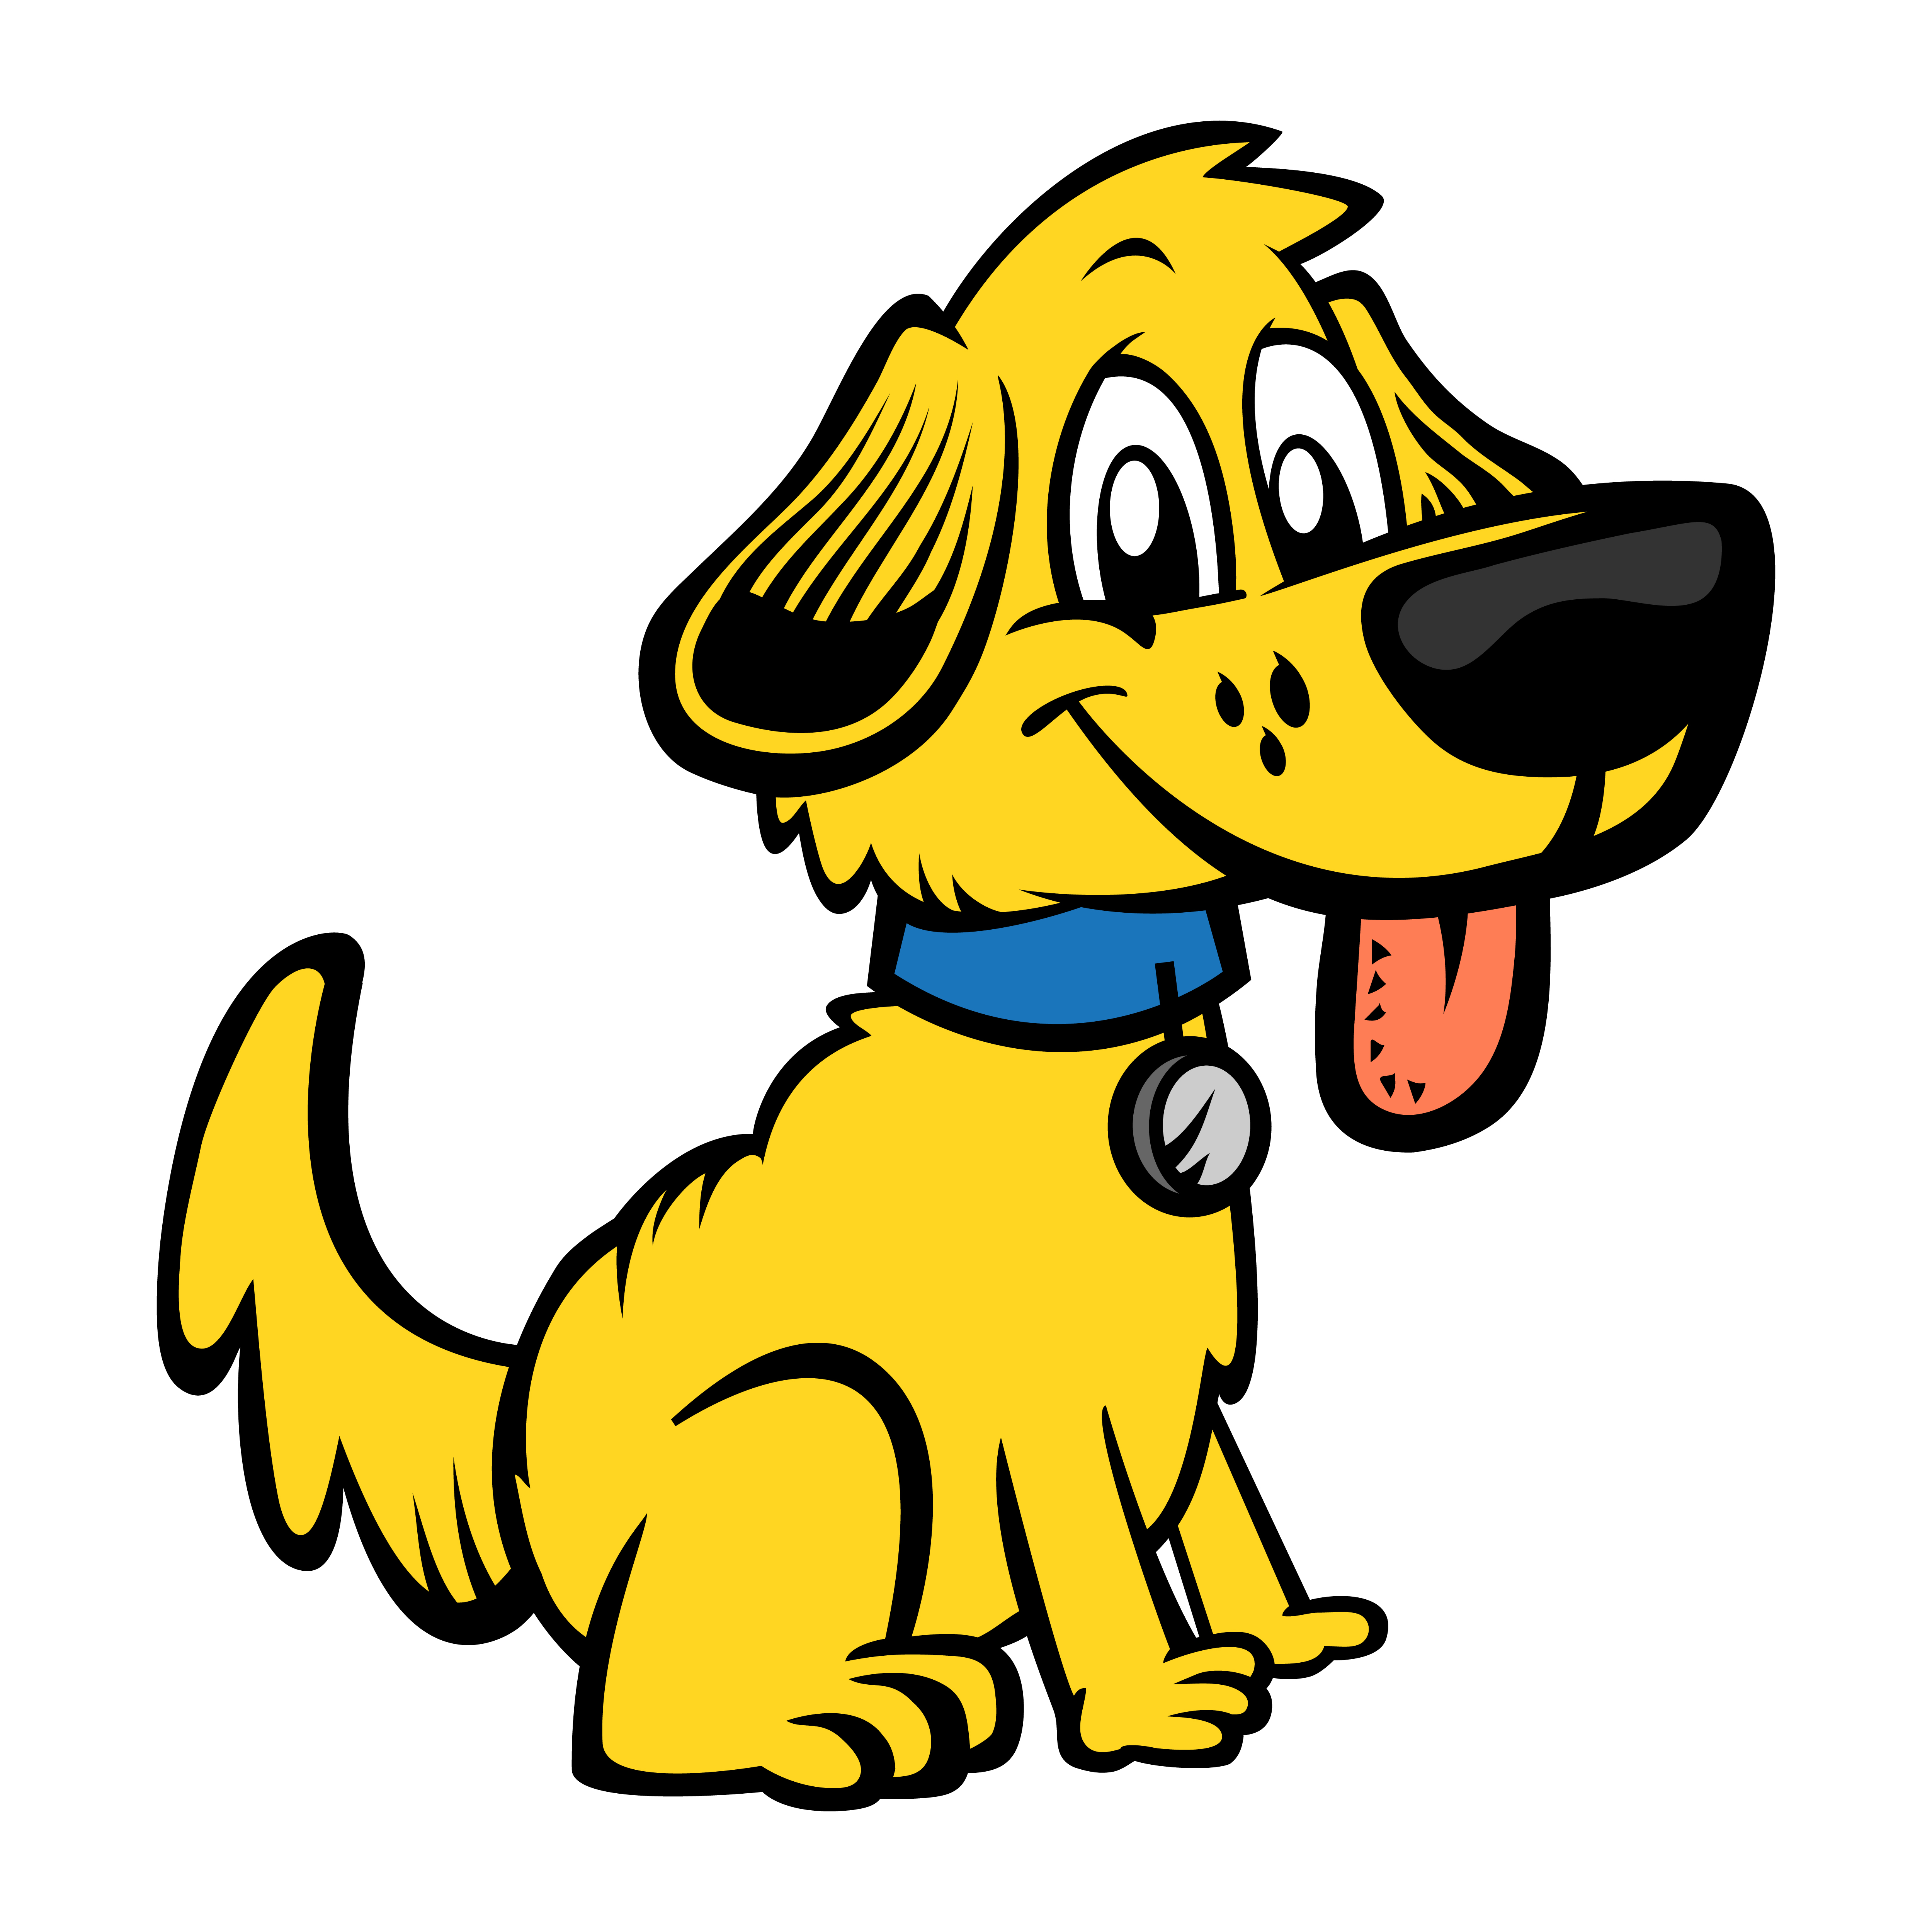 Cute friendly cartoon dog - Download Free Vectors, Clipart ...